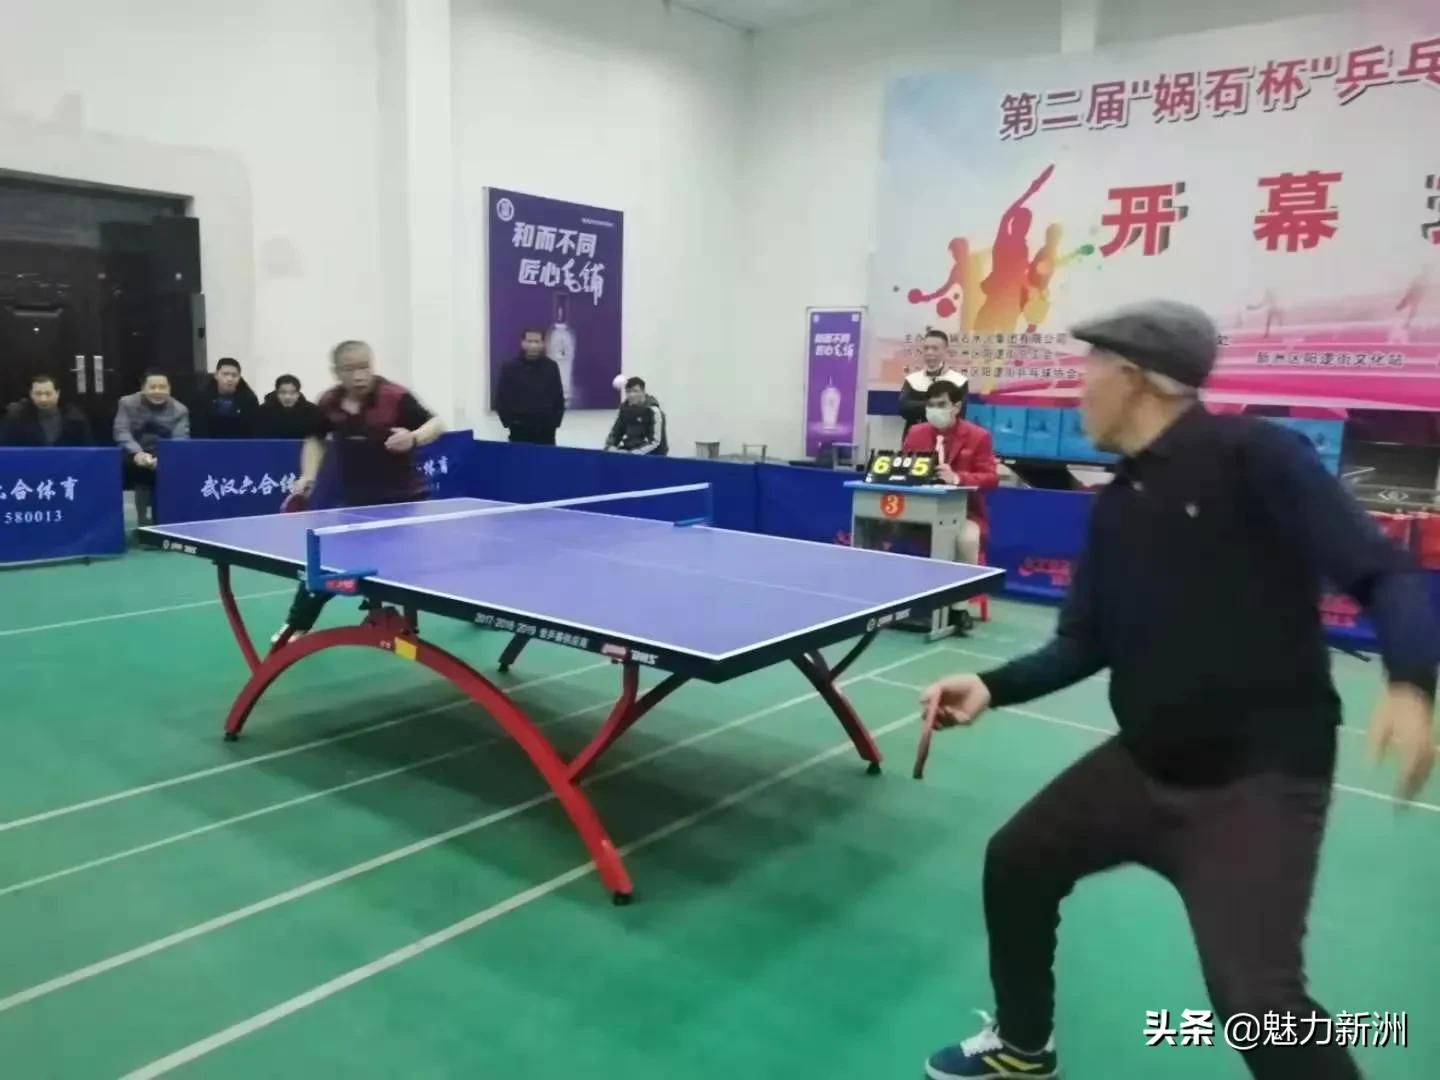 新洲区阳逻街举办第二届娲石杯乒乓球团体比赛活动